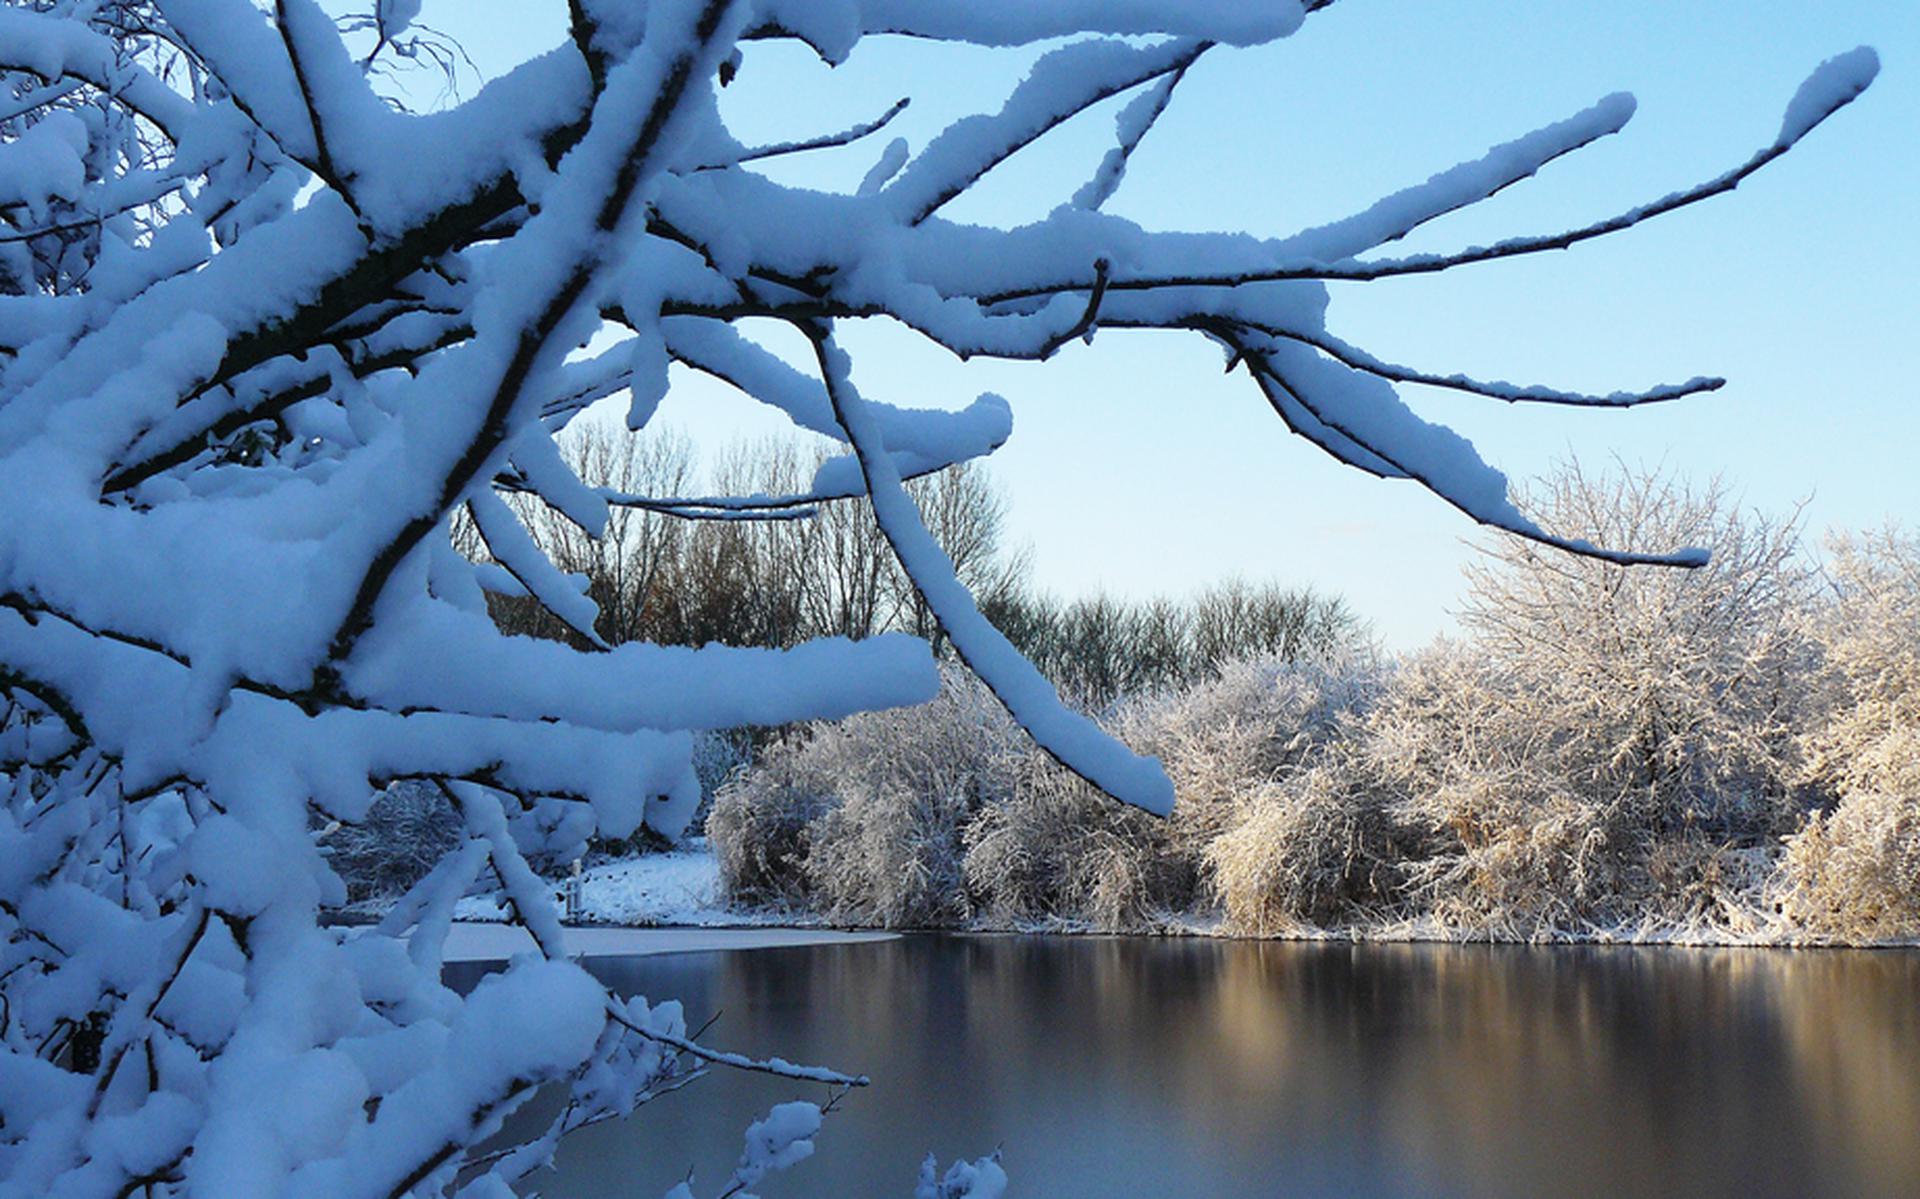 Rond 5 december 2012 hadden de Sint en zijn pieten te maken met sneeuw in de polder.